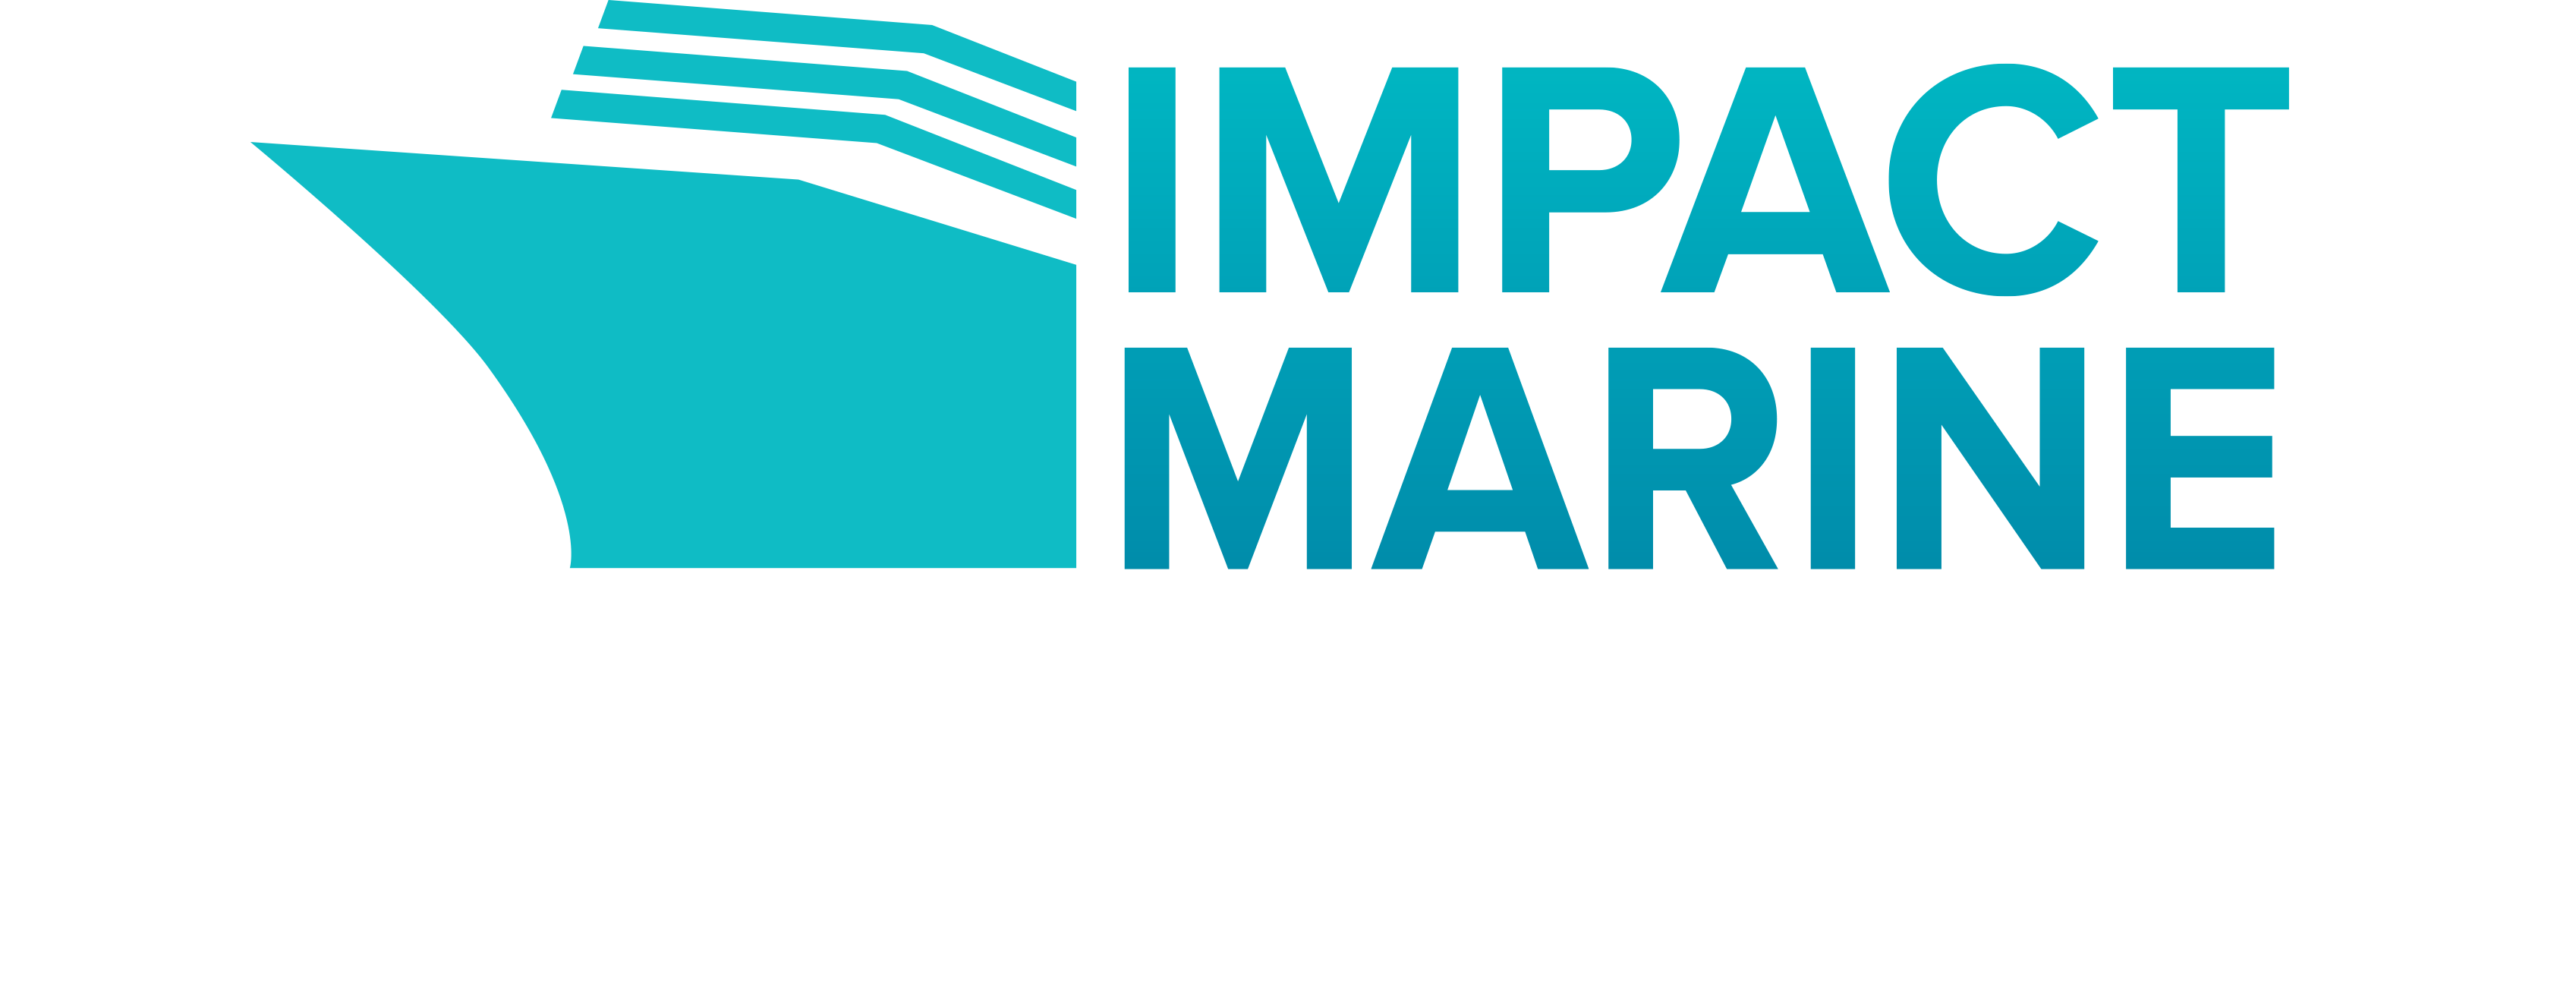 impact marine division logo